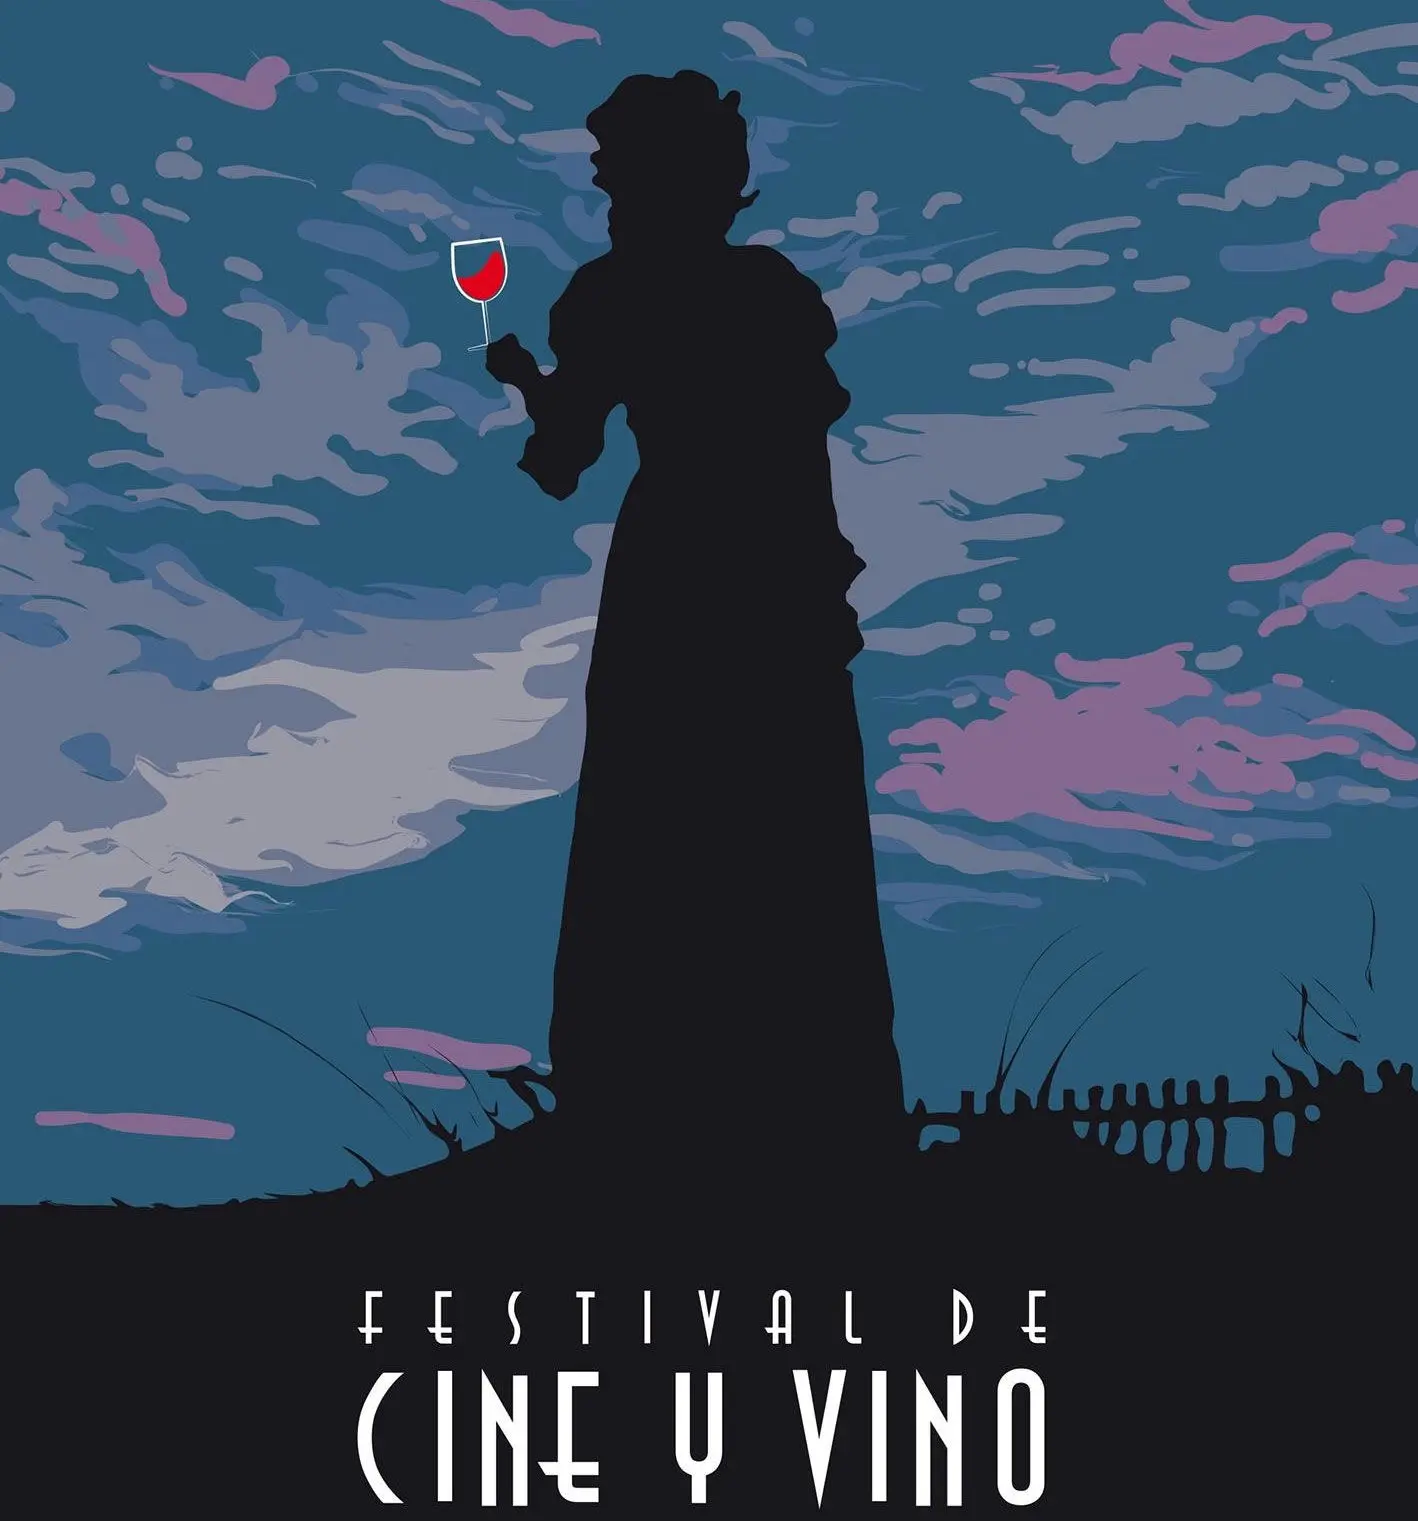 Festival de Cine y Vino de La Solana